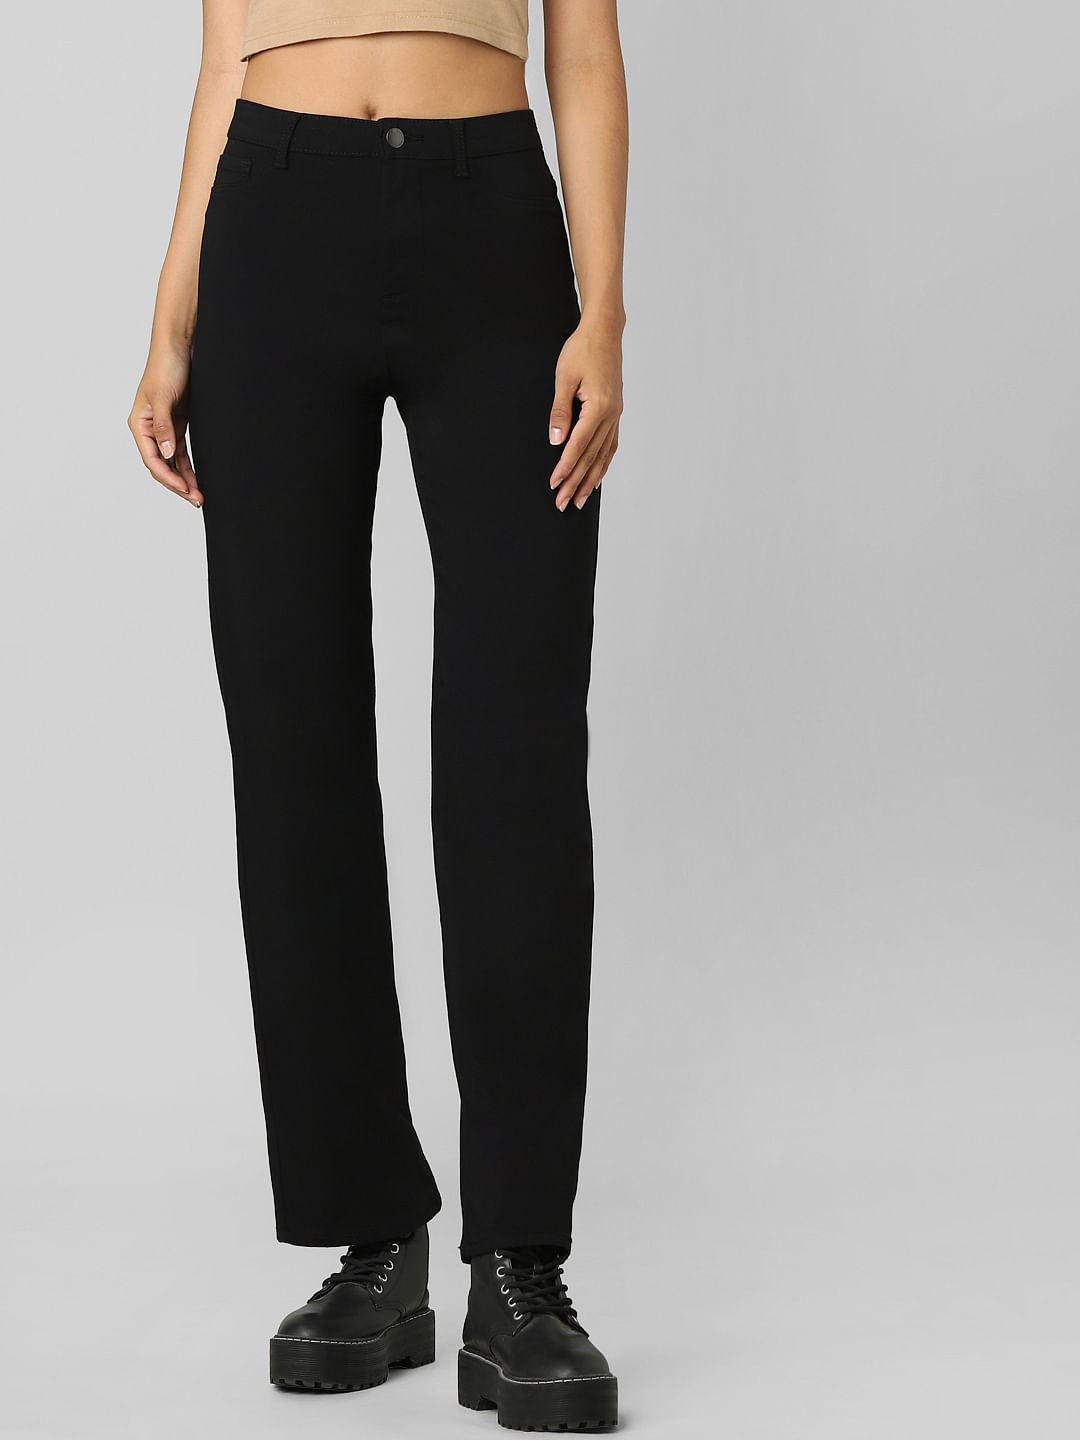 Buy Black Trousers  Pants for Women by BROADSTAR Online  Ajiocom